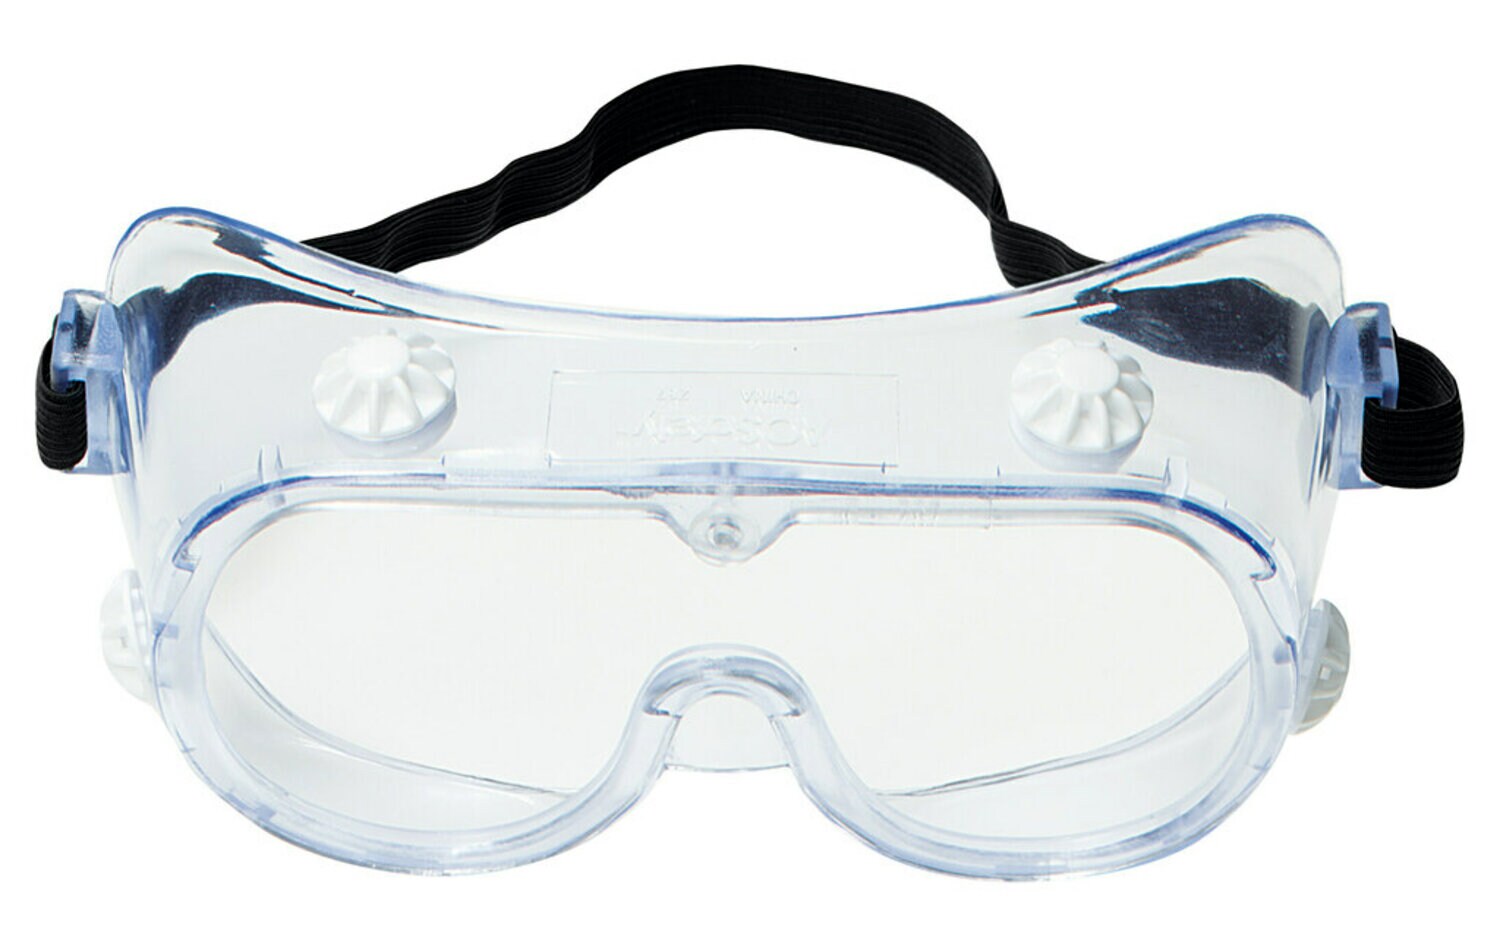 7000002378 - 3M 334 Splash Safety Goggles Anti-Fog 40661-00000-10, Clear Anti Fog
Lens, 10 EA/Case